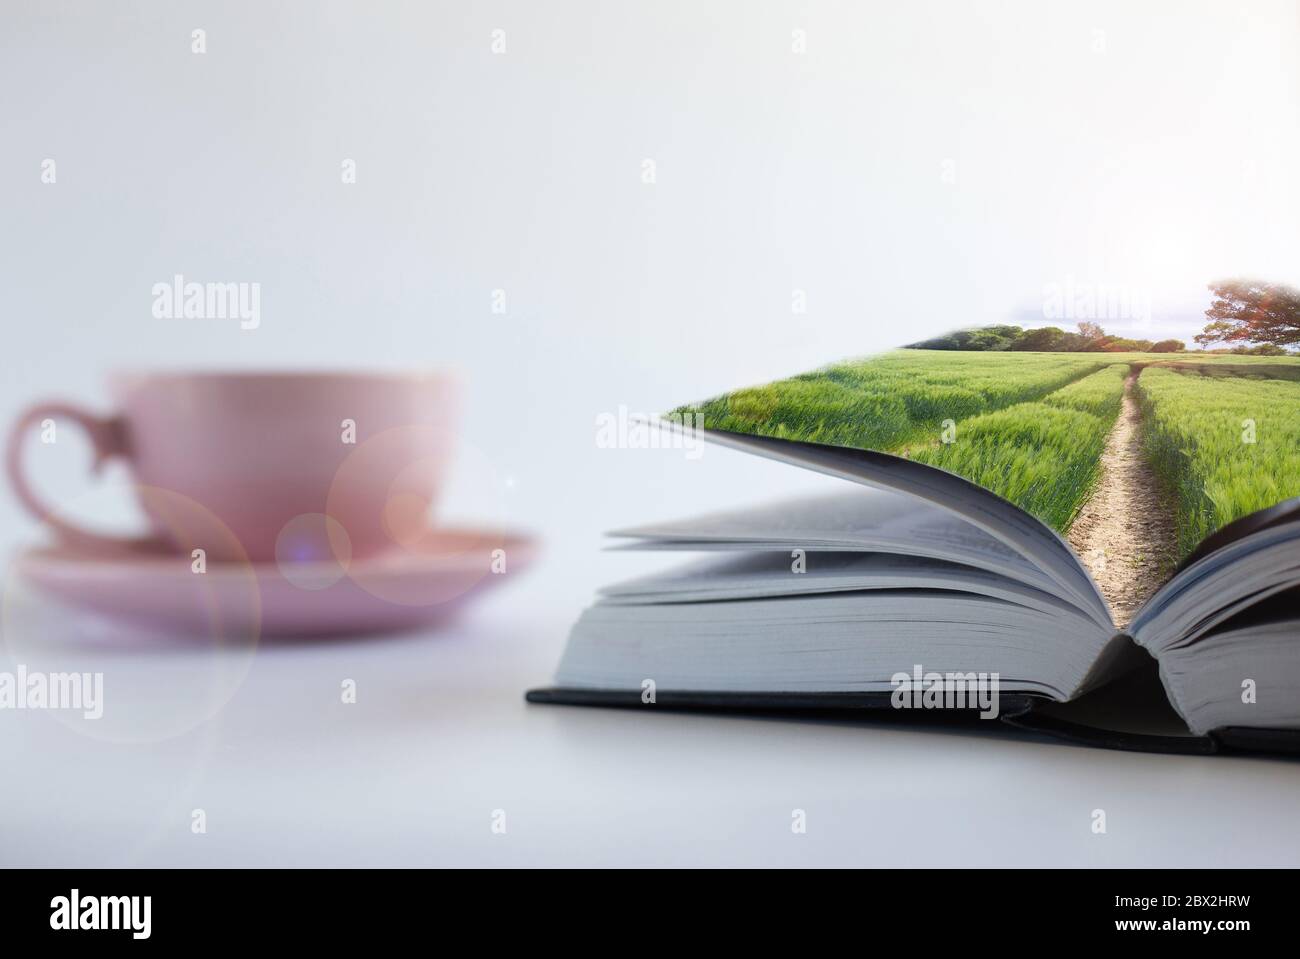 Collage von Fotos von grünen ländlichen Landschaft mit Licht aus Objektiv Flare auf Soft-Fokus offenes Buch, Tasse Tee Kaffee auf weißem Hintergrund. Buch ist Macht, Quelle des Wissens, Traum, Zugang zu Weisheitskonzept Stockfoto